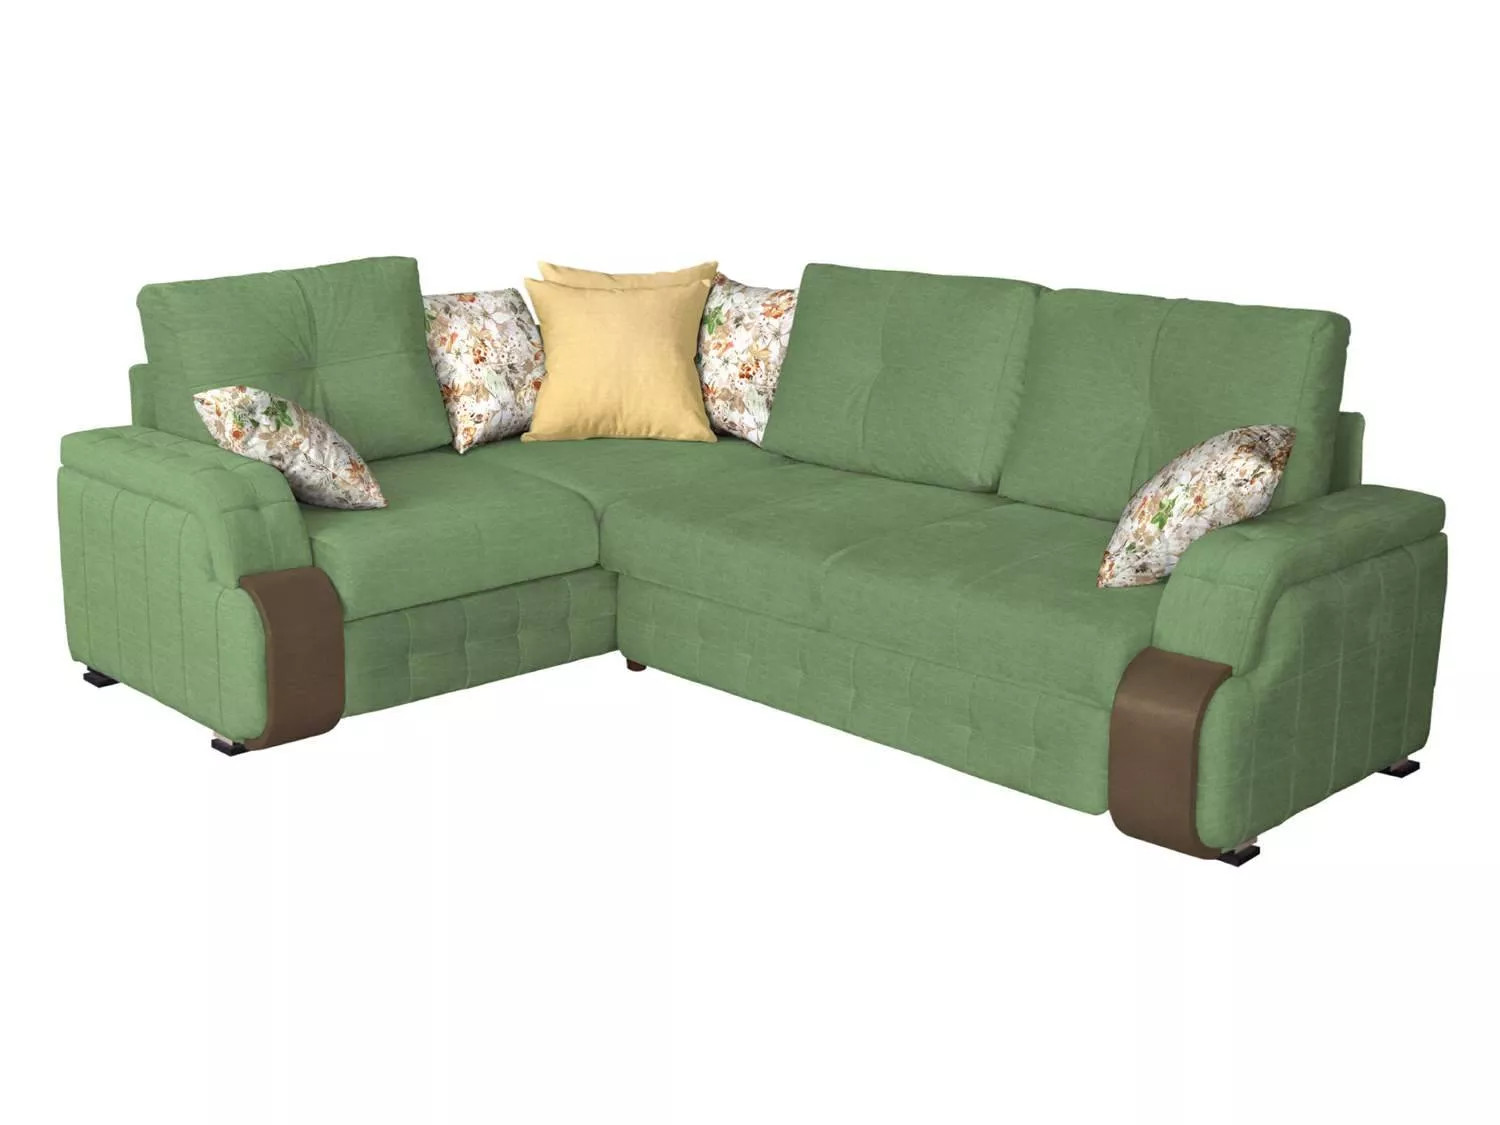 Великолепный угловой диван по доступной цене.